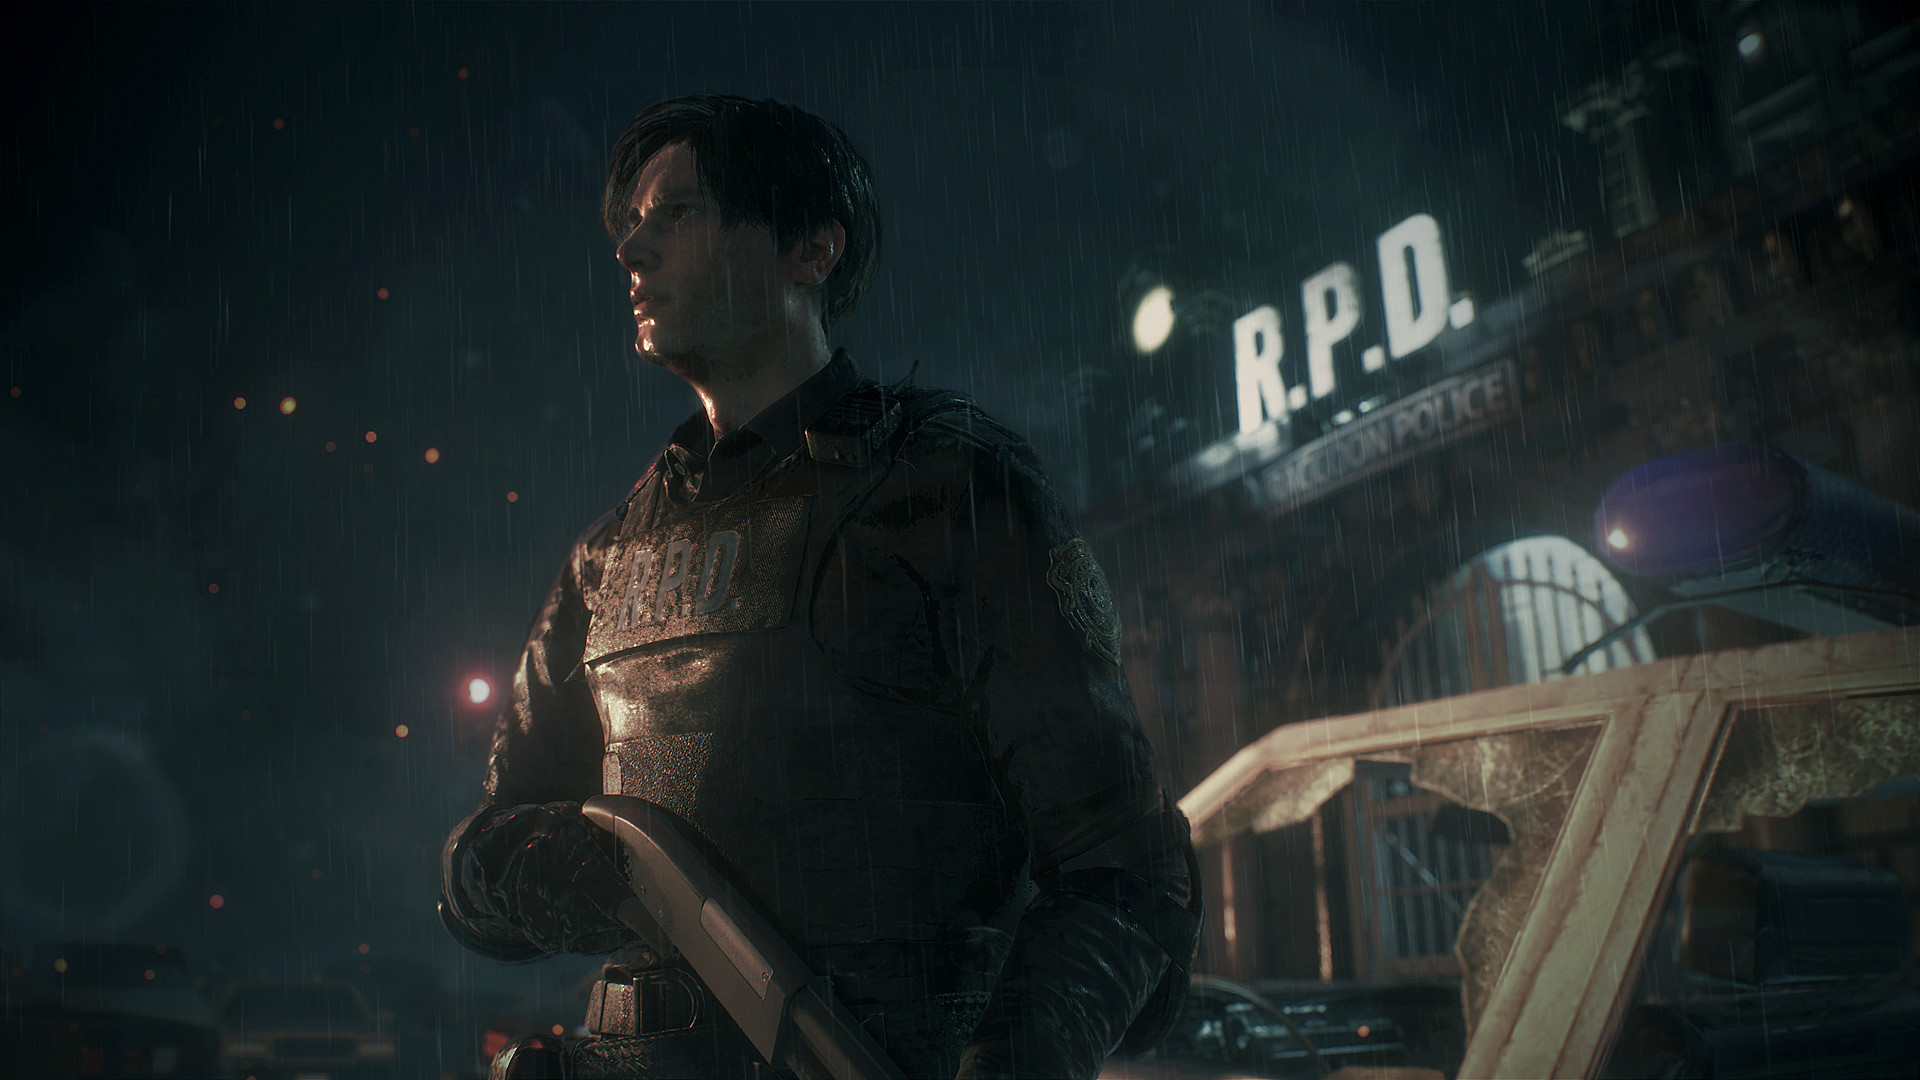 سی دی کی اریجینال استیم بازی Resident Evil 2 / Biohazard RE:2 Deluxe Edition